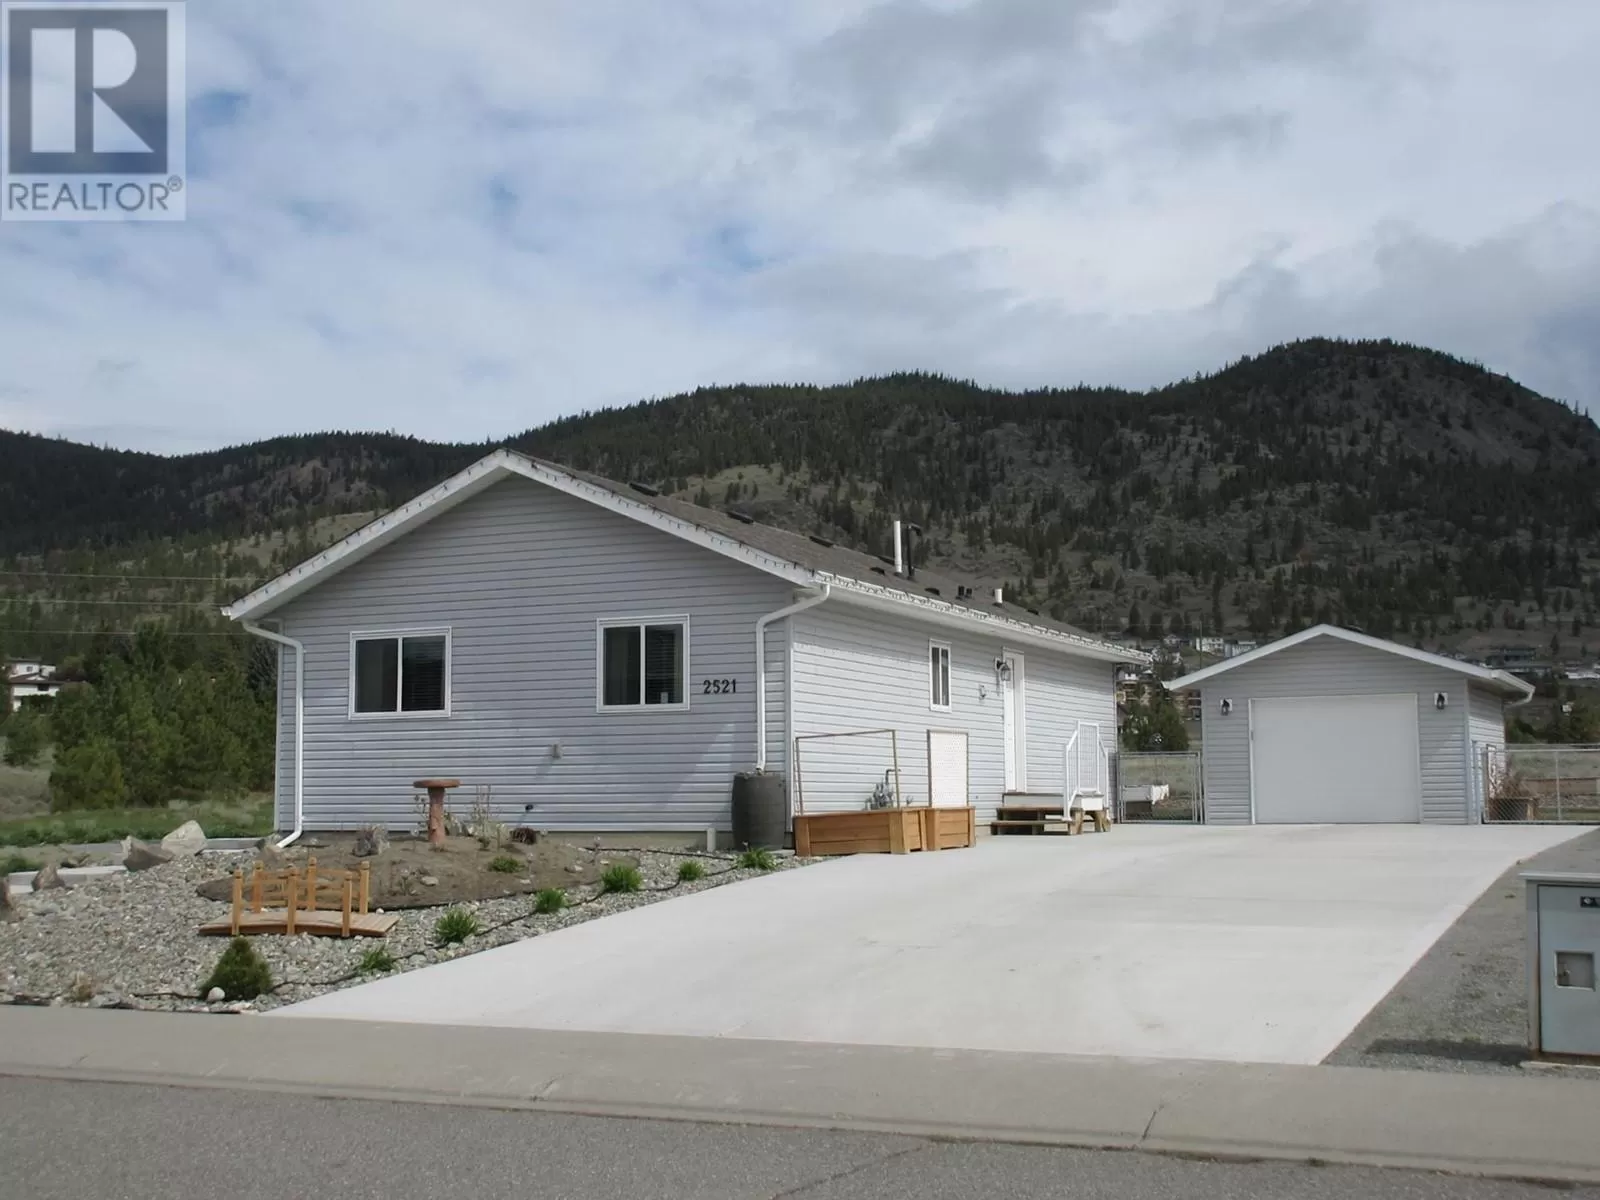 House for rent: 2521 Spring Bank Ave, Merritt, British Columbia V1K 1S1